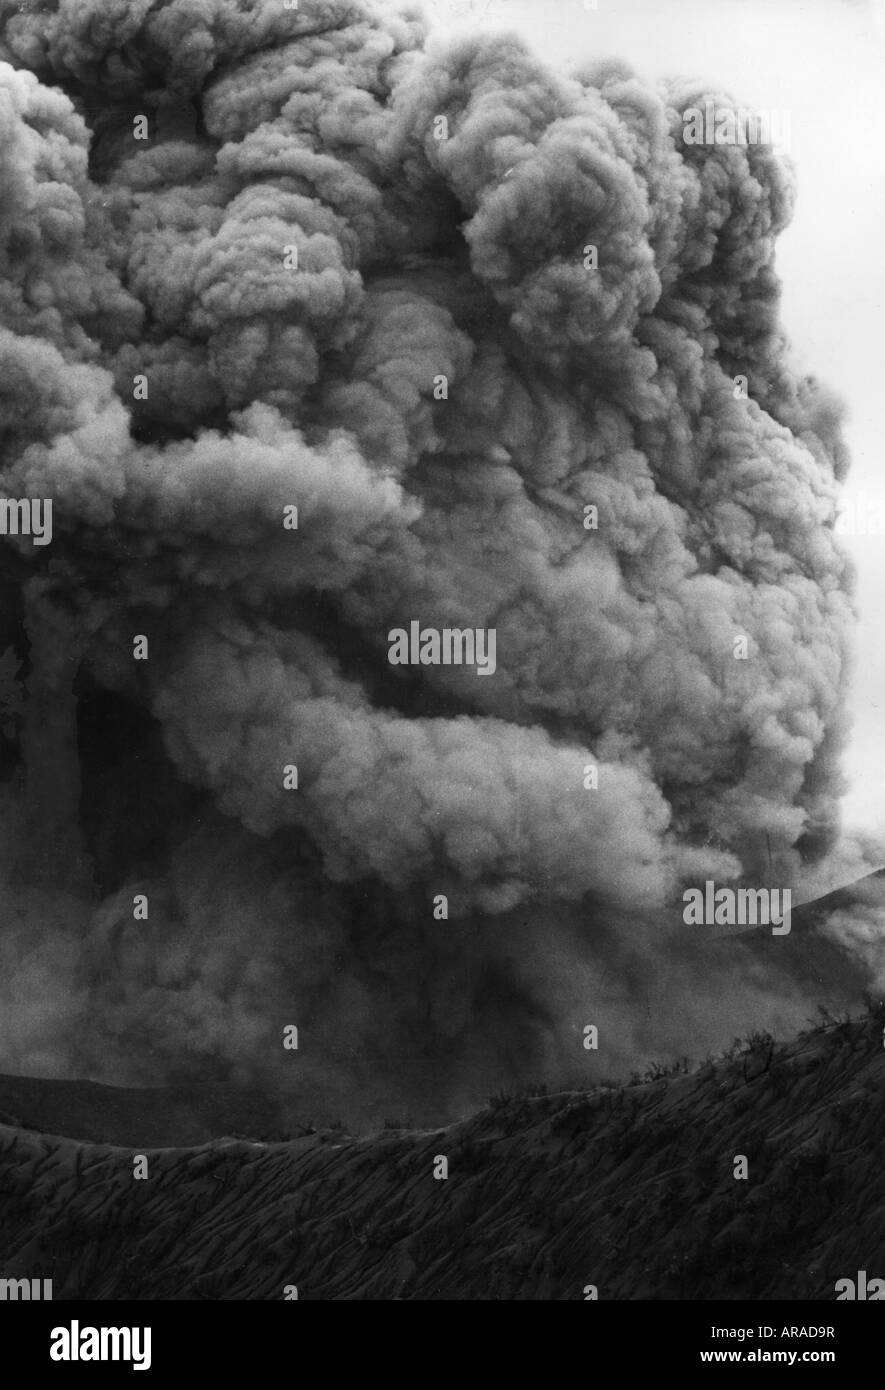 Geographie/Reise, Costa Rica, Naturkatastrophen/Katastrophe, Vulkanausbruch des Irazu-Vulkans, schwarze Wolken über dem Krater, 1963, Stockfoto